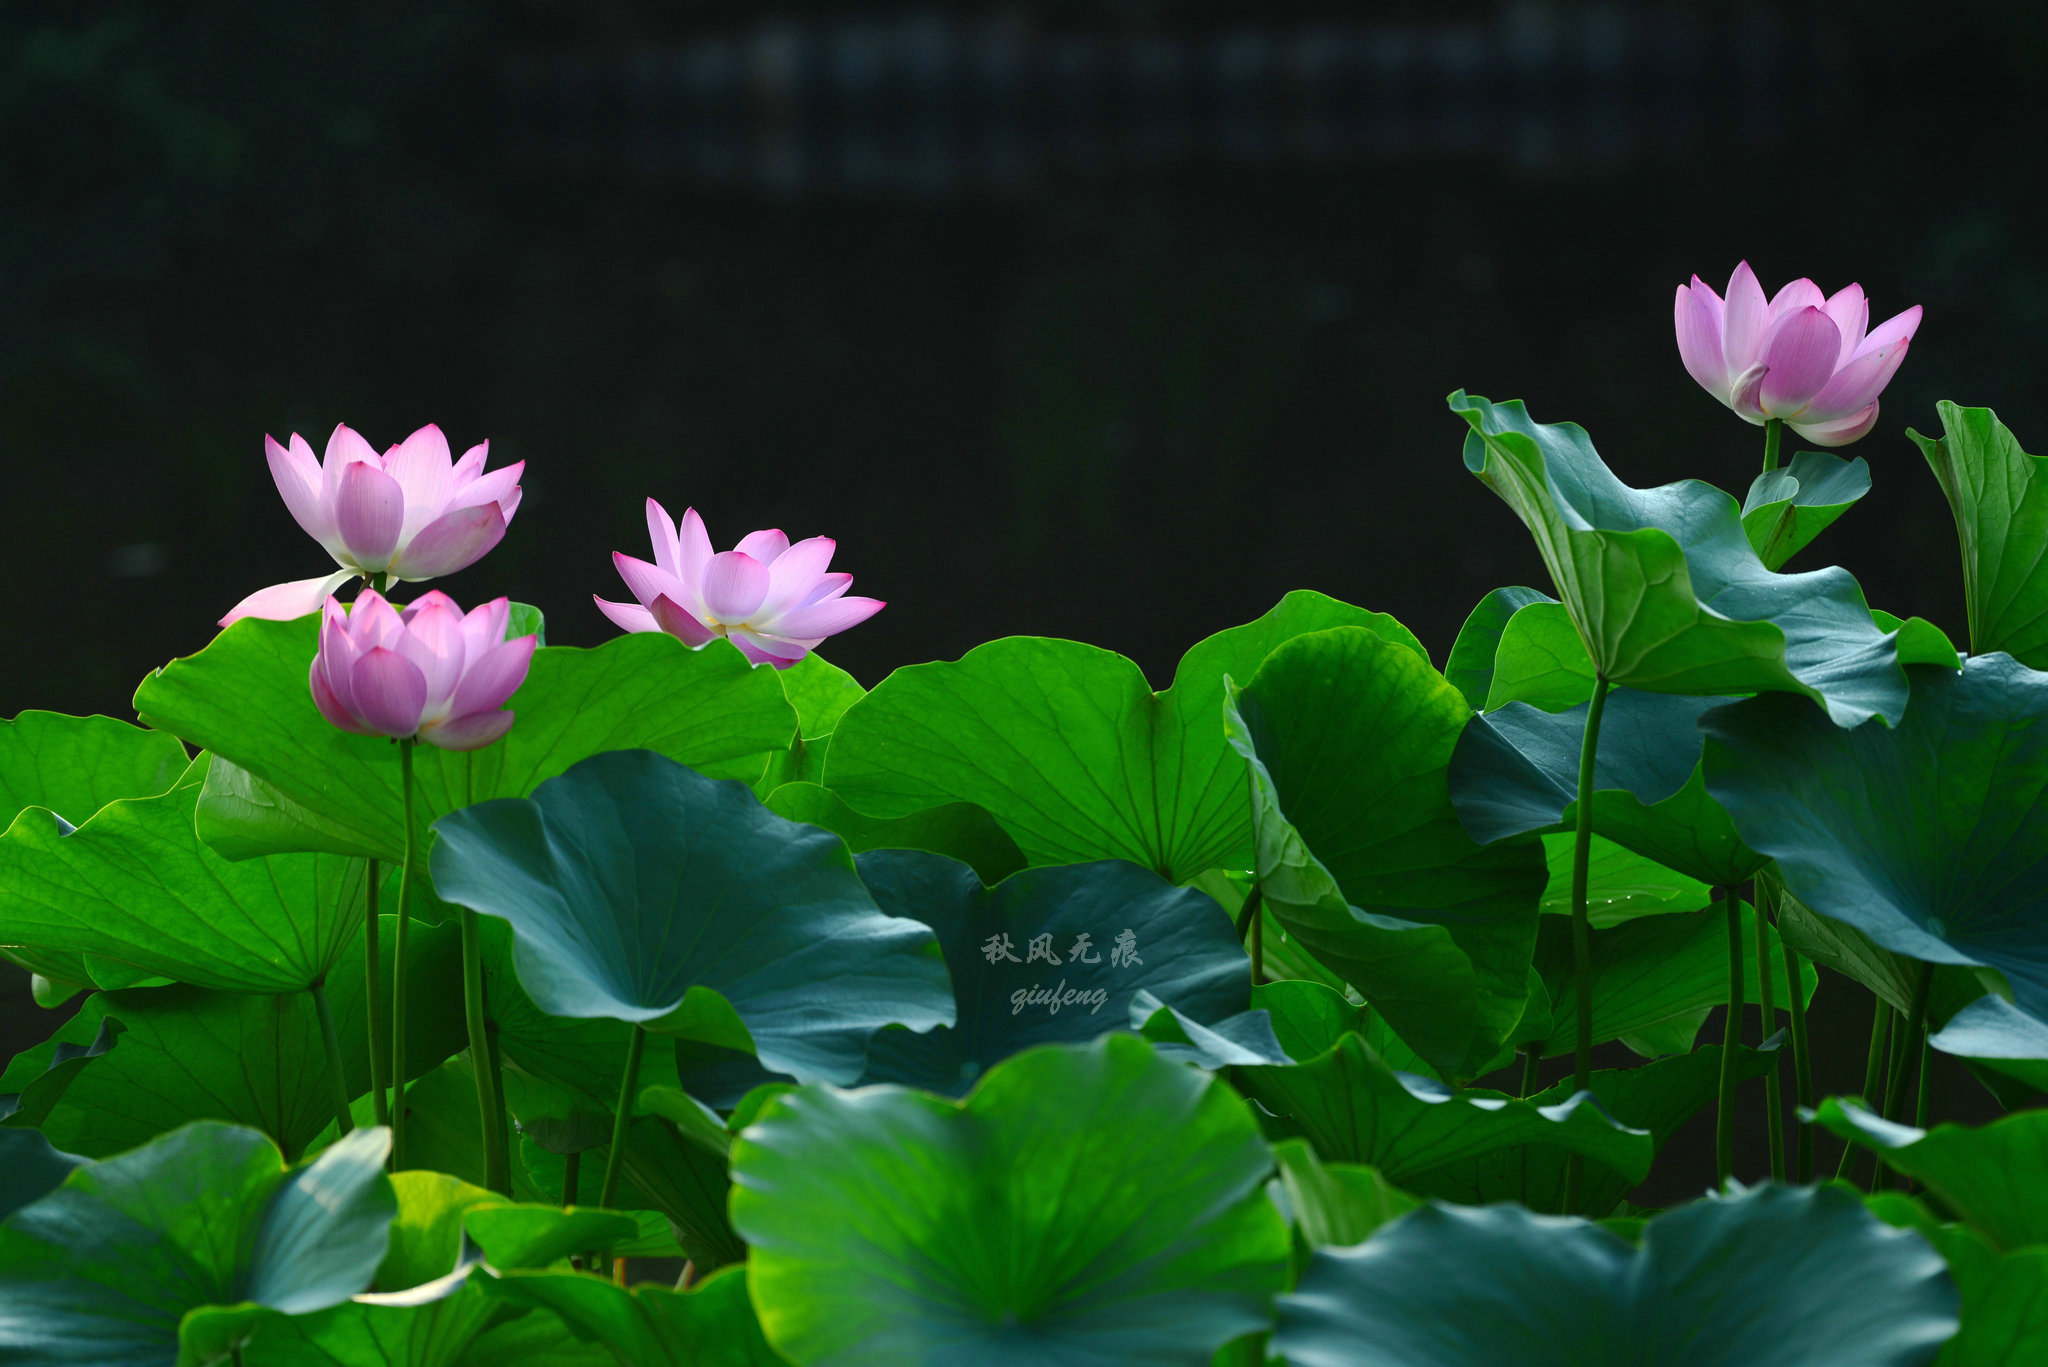 晨光里的荷花 花瓣宛若莲灯 靓丽了西安北城的夏日风景 上游新闻